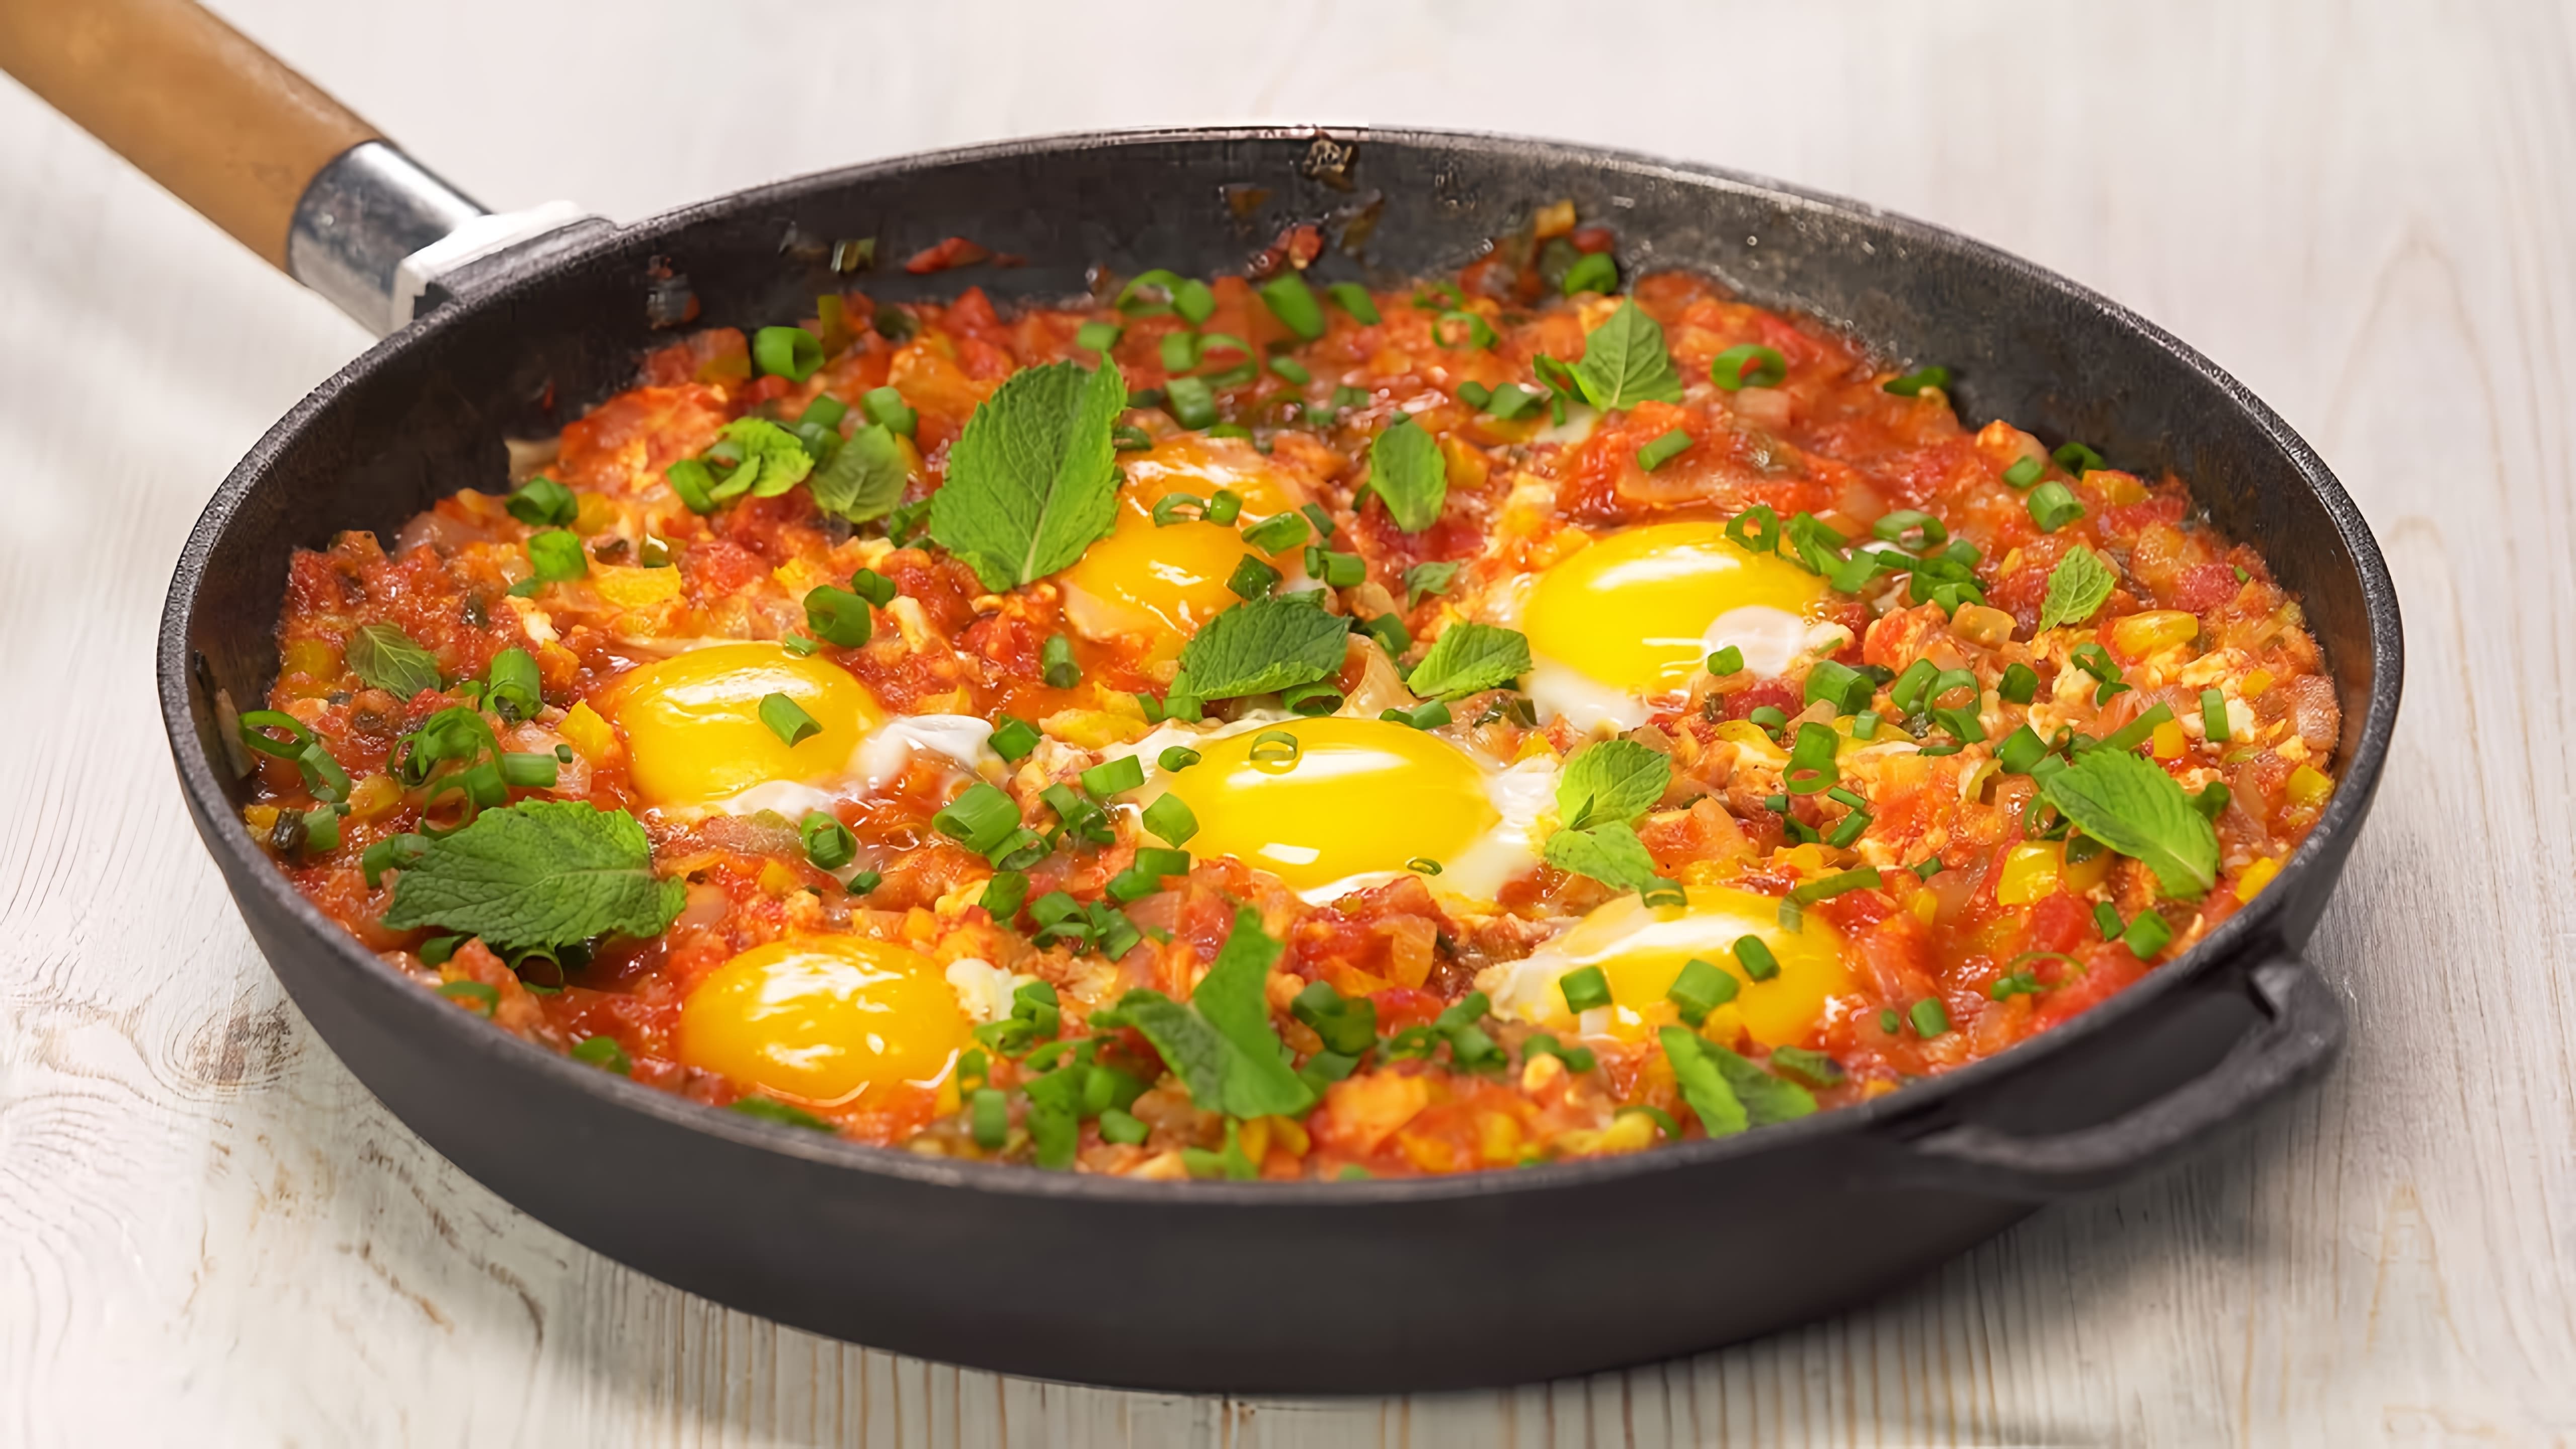 В этом видео демонстрируется рецепт приготовления турецкой яичницы с овощами